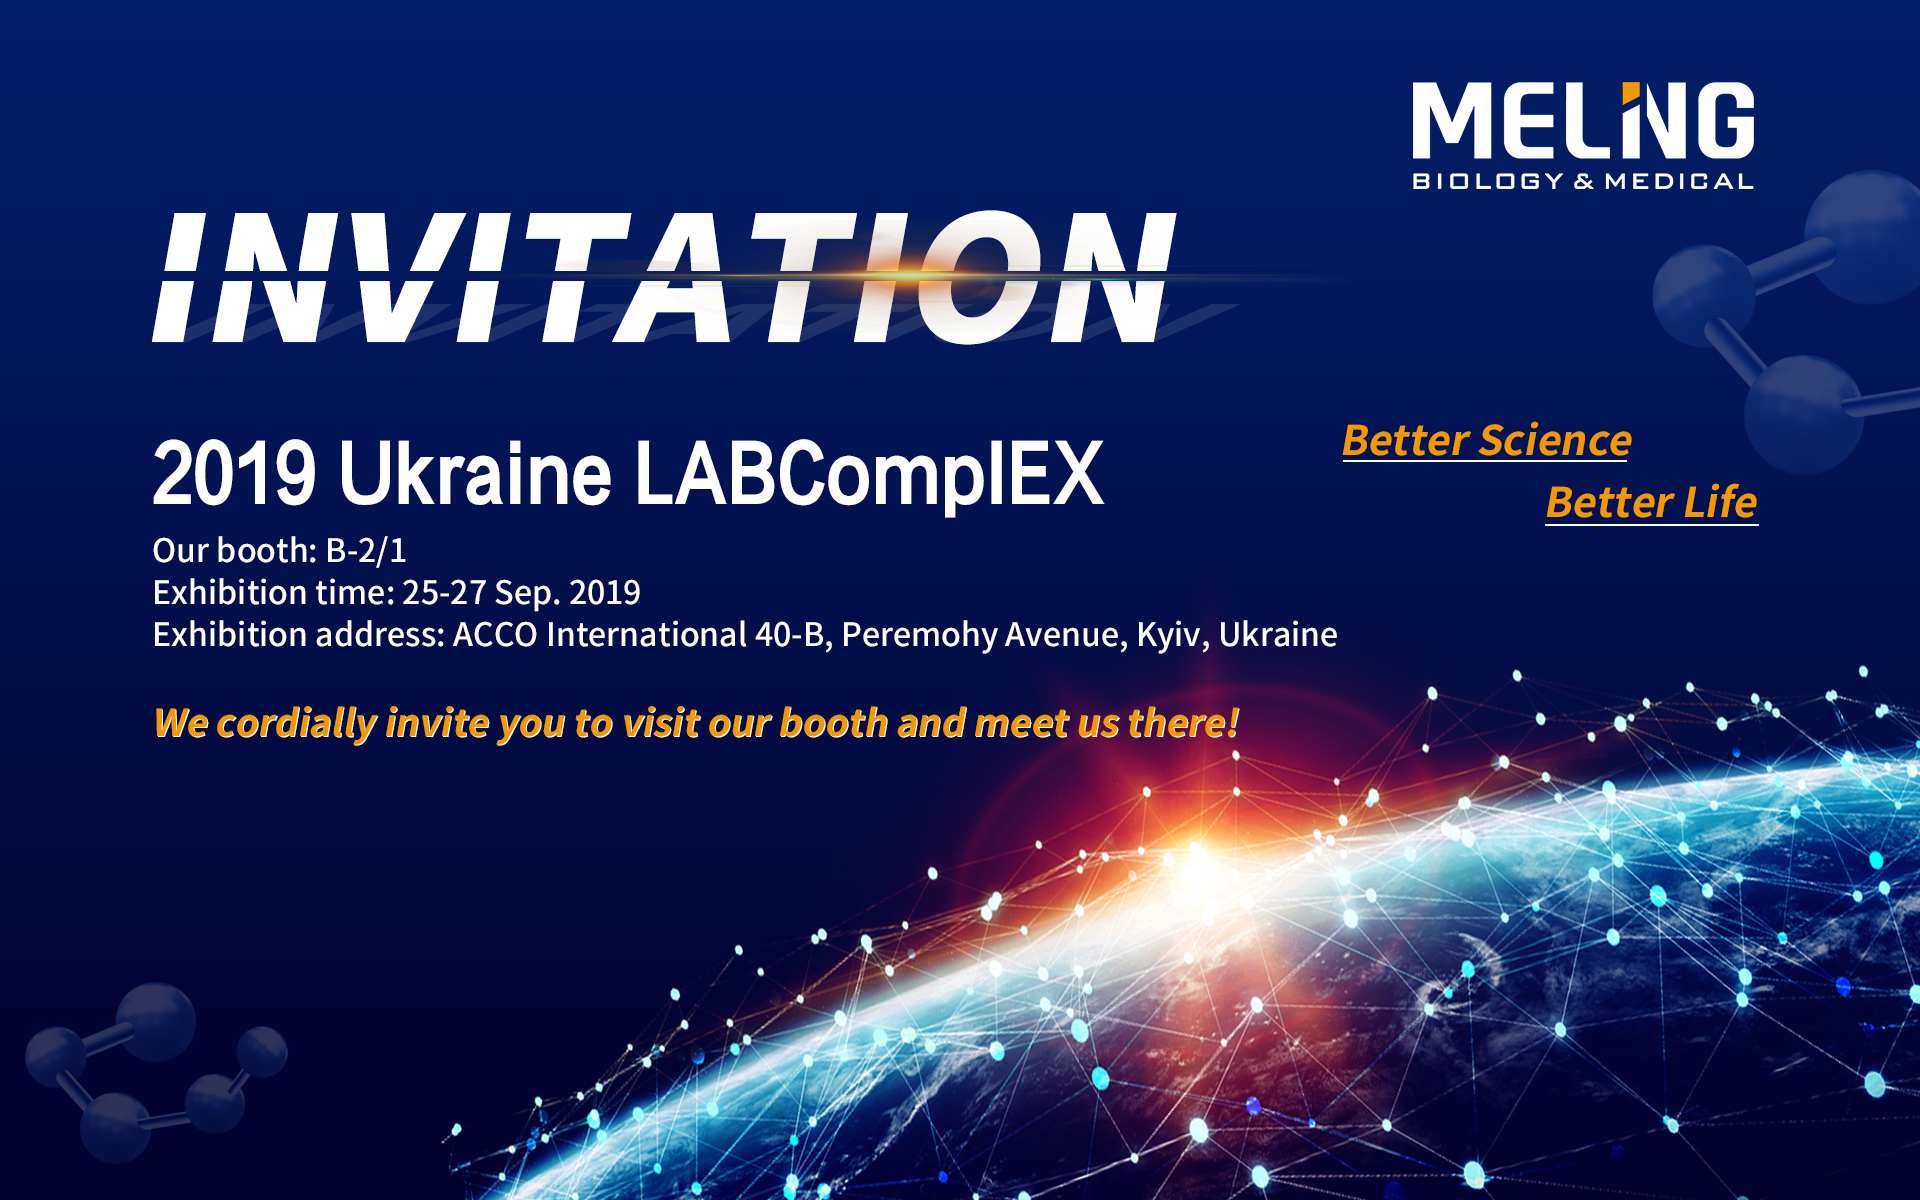 Звездные продукты на выставке 2019 Ukraine LABCompIEX
